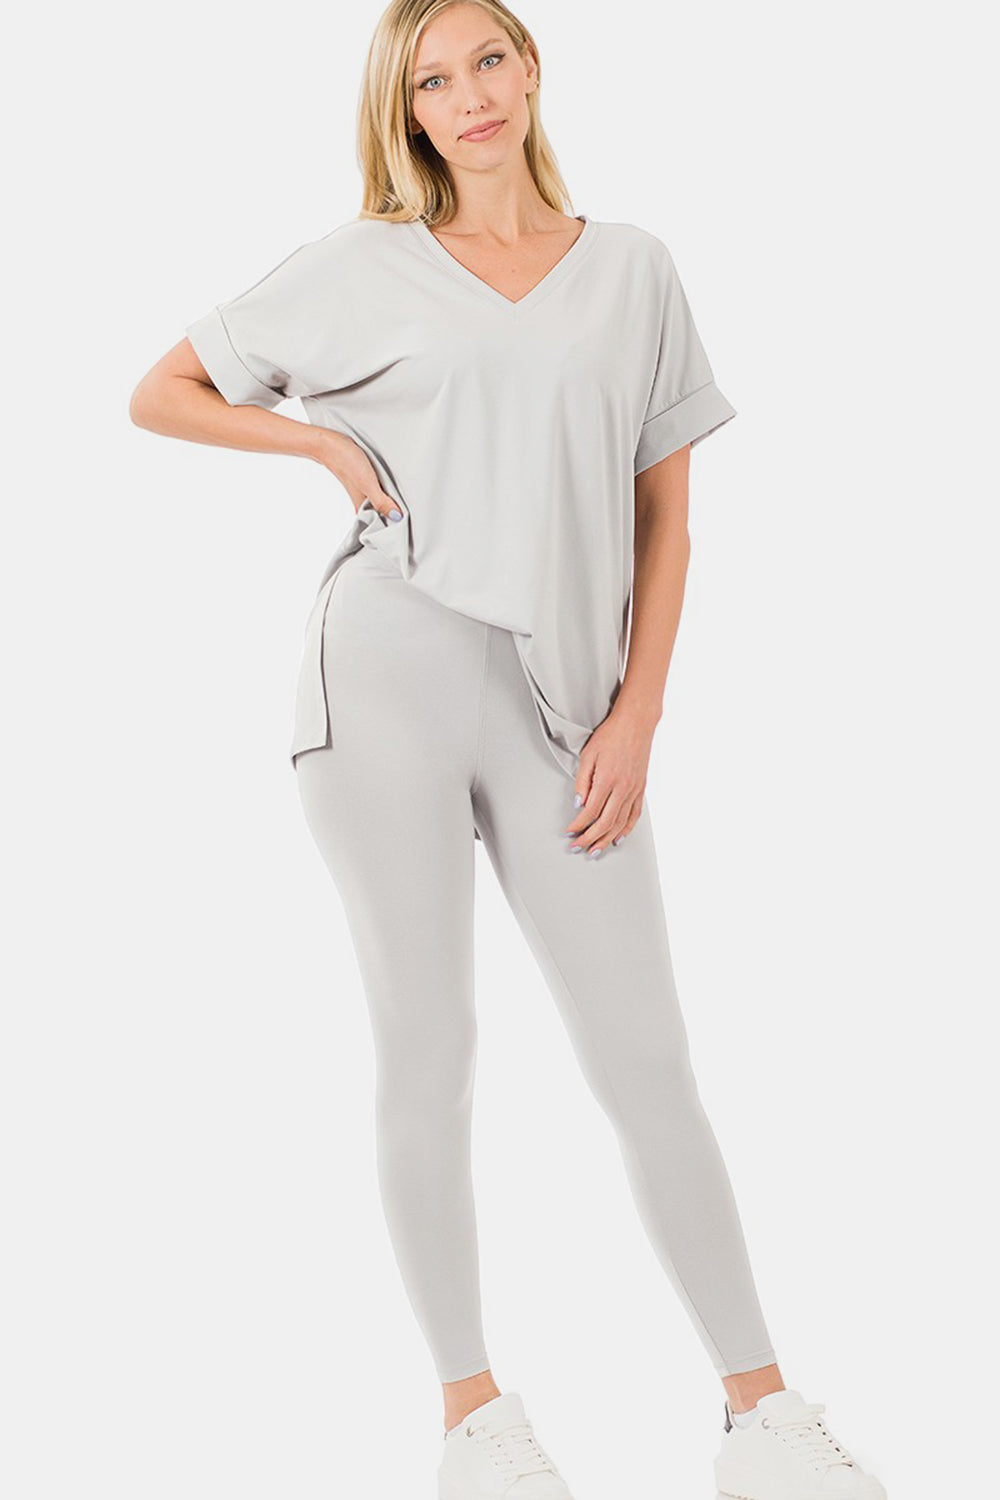 Zenana Light Cement V-Neck Rolled Short Sleeve T-Shirt and Leggings Lounge Set Trendsi